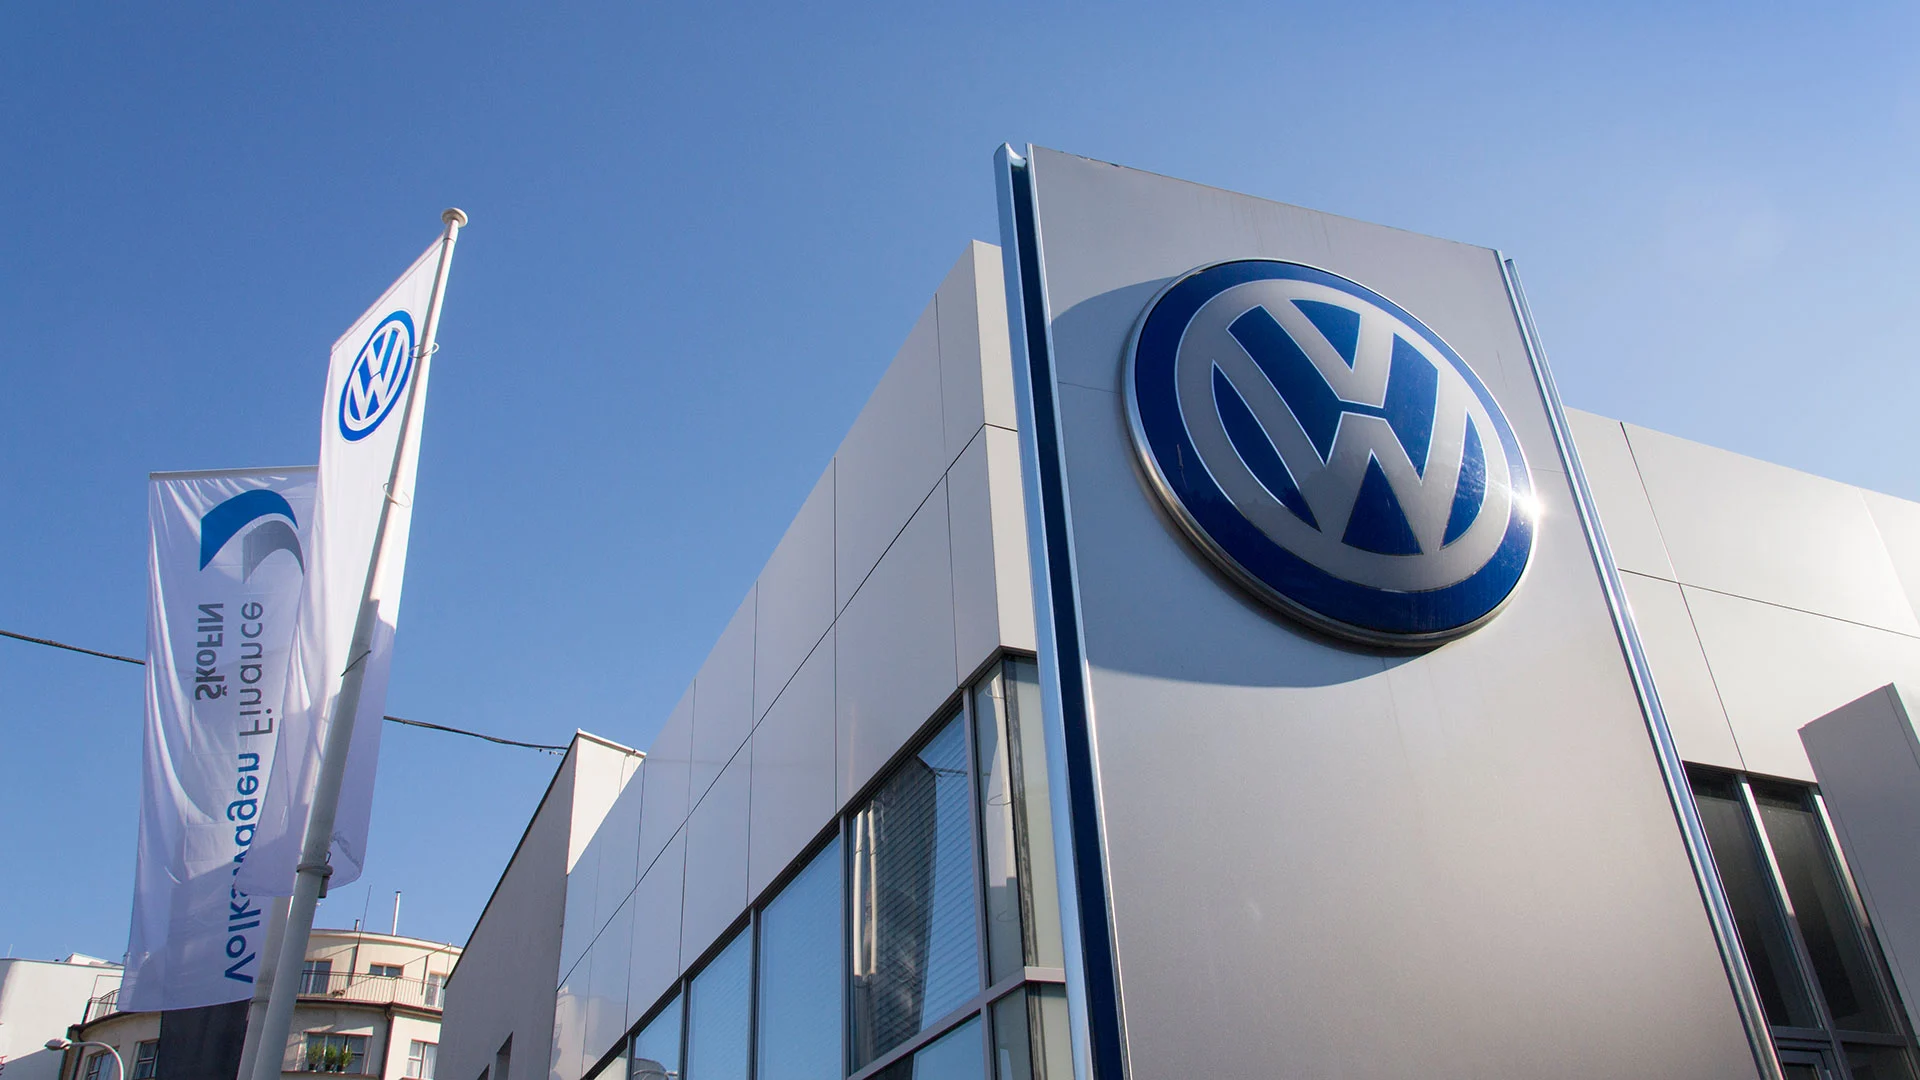 Volkswagen in der Krise – kann dieses Sparpaket die Aktie retten? (Foto: josefkubes/iStockphoto)